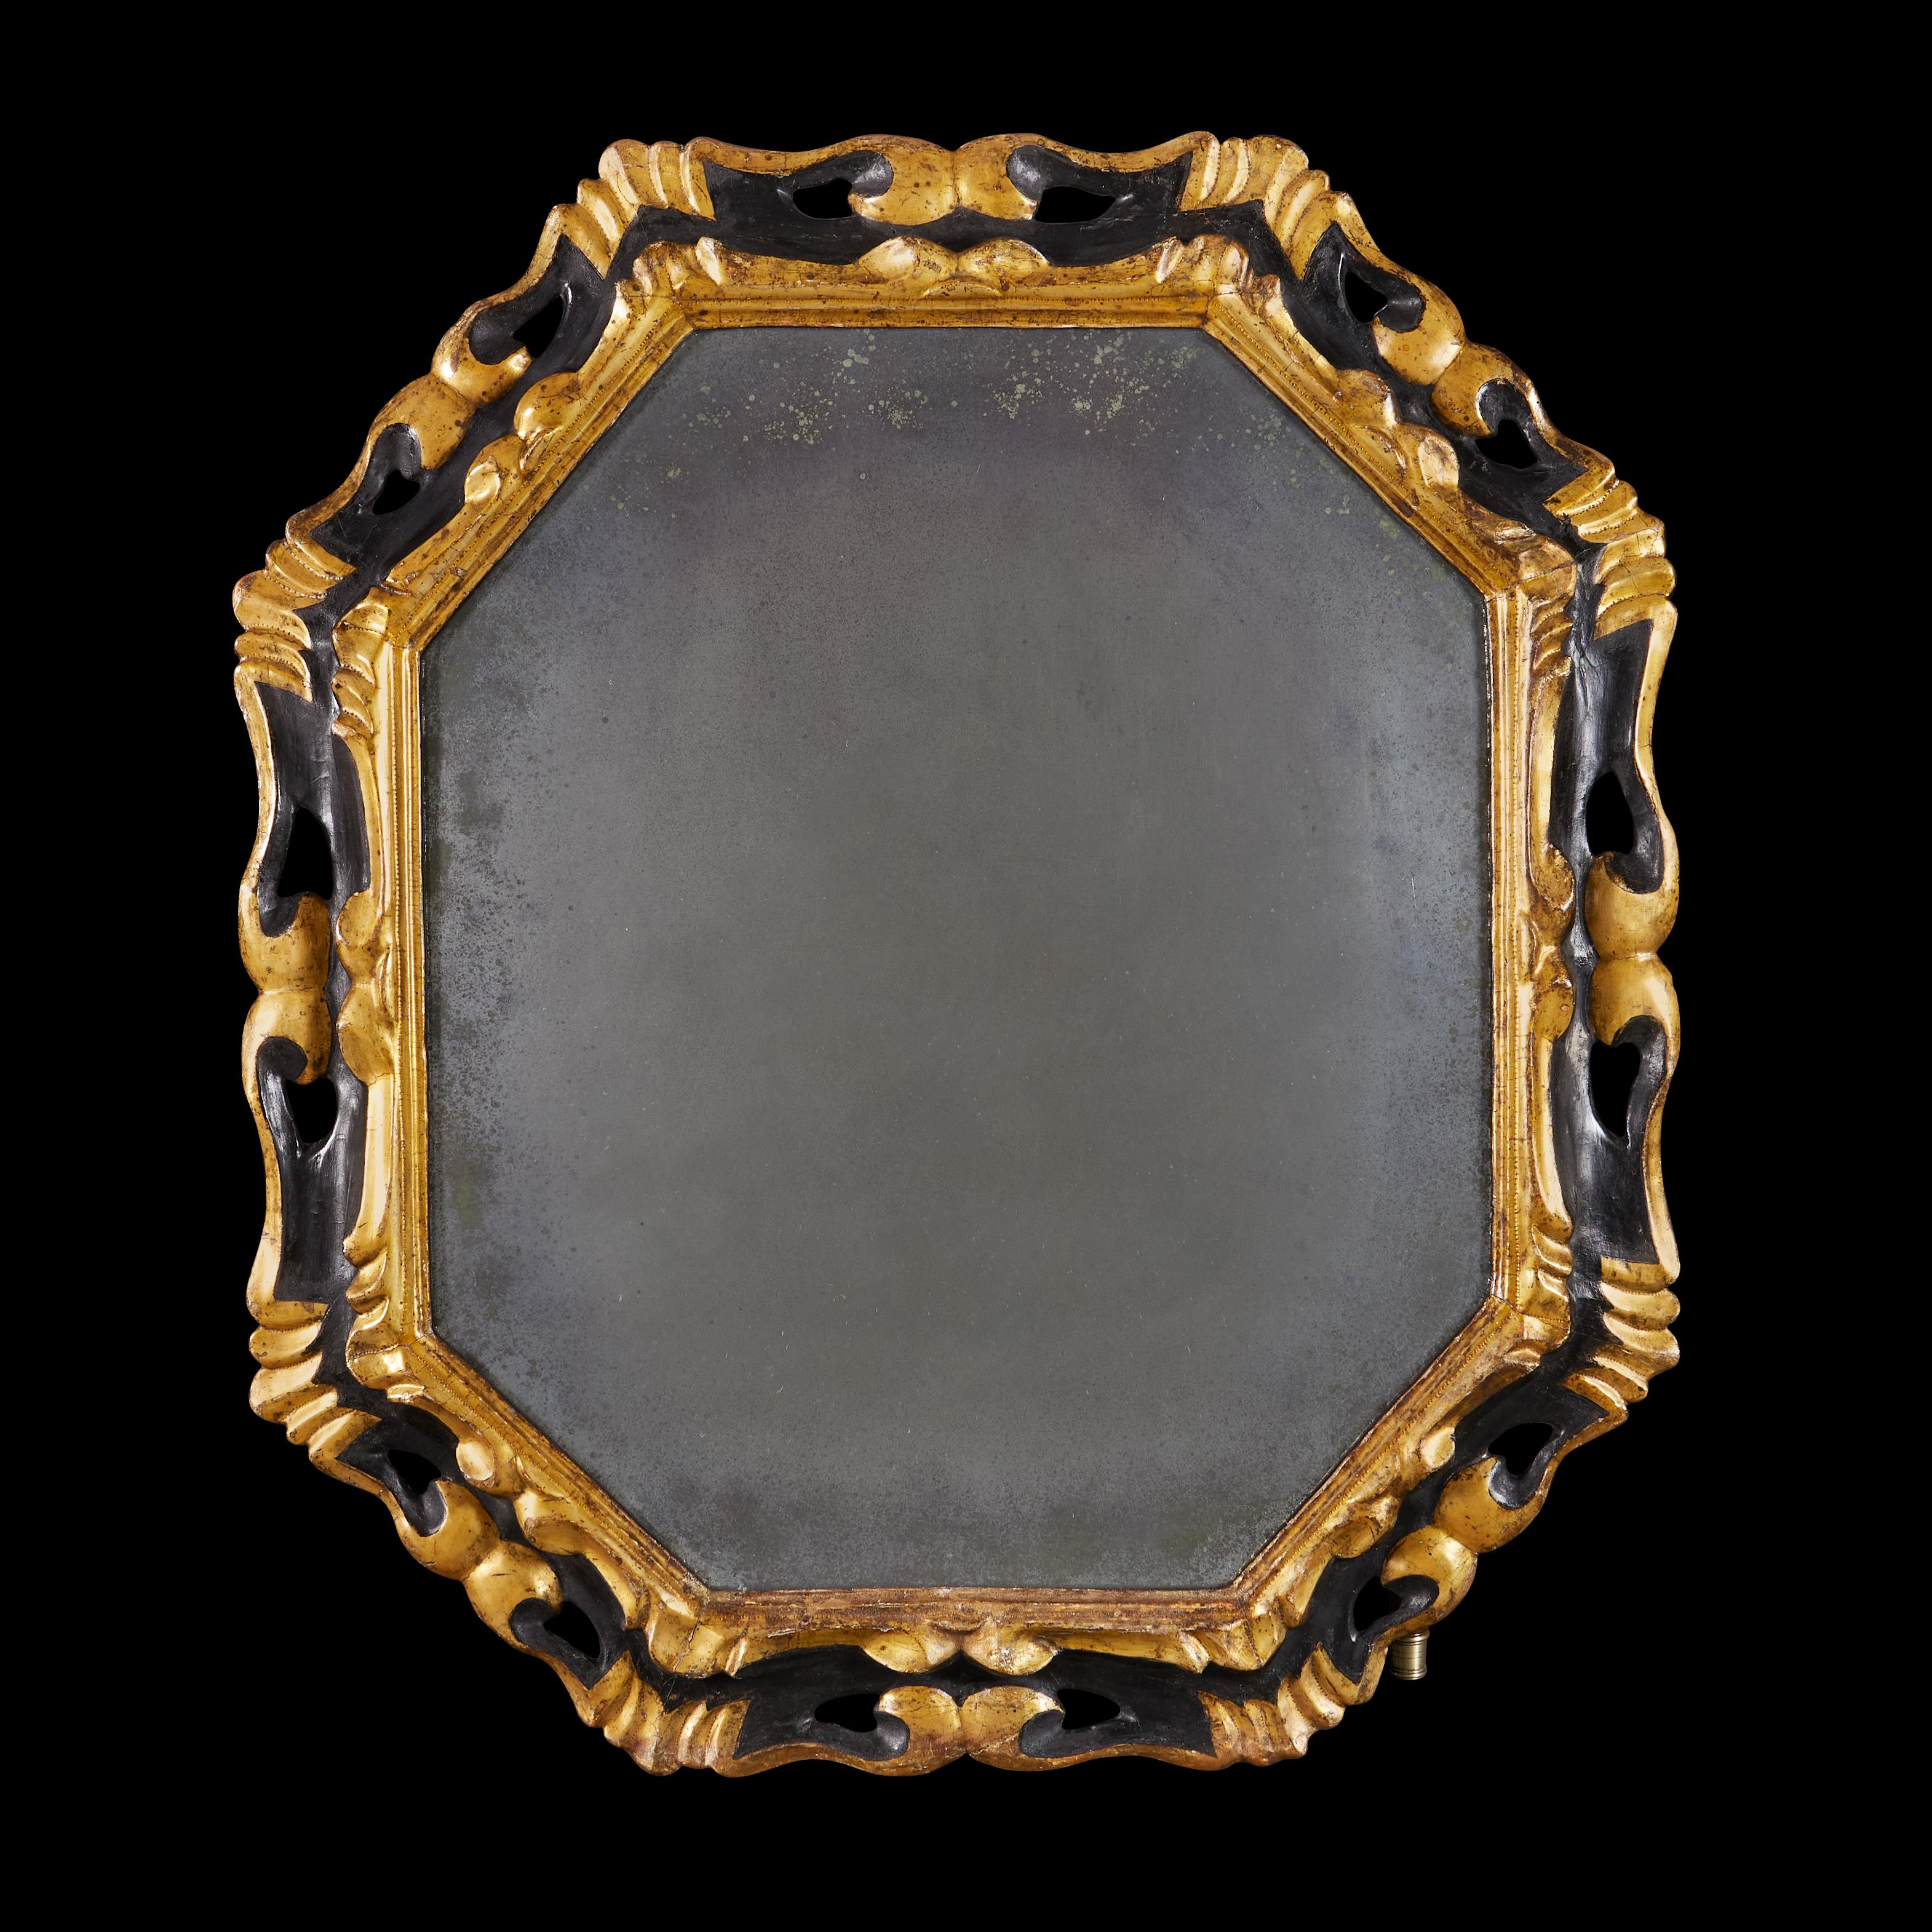 Italie, vers 1850

Magnifique miroir octogonal du milieu du XIXe siècle, avec une bordure en Rocaille percée, la surface ébonisée avec des reflets dorés, conservant la plaque de miroir au mercure d'origine.

Hauteur  93.00cm
Largeur    80.00cm